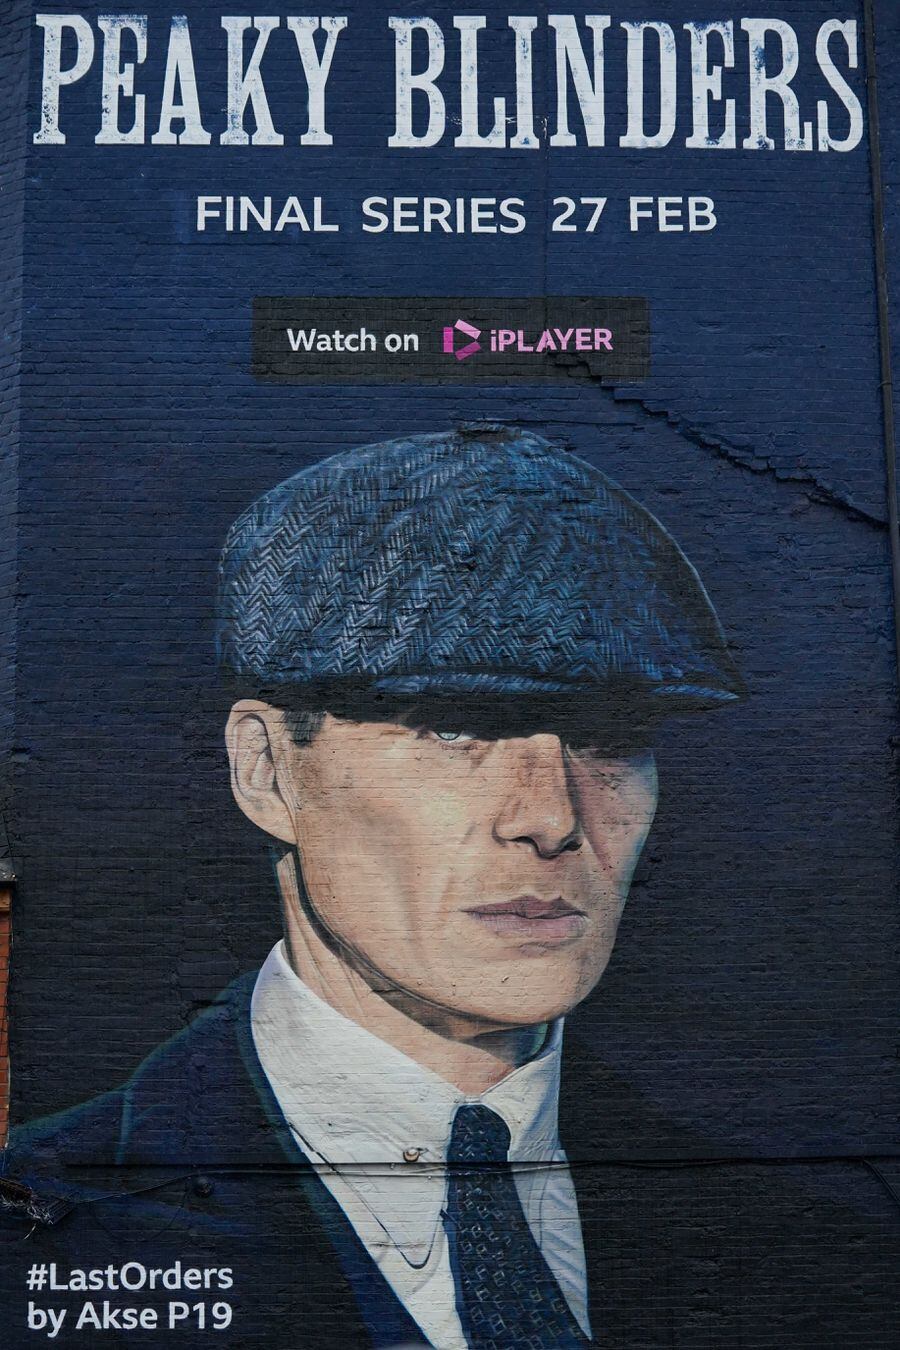 Date For Peaky Blinders Final Season Unveiled On Huge Mural In Birmingham Shropshire Star 